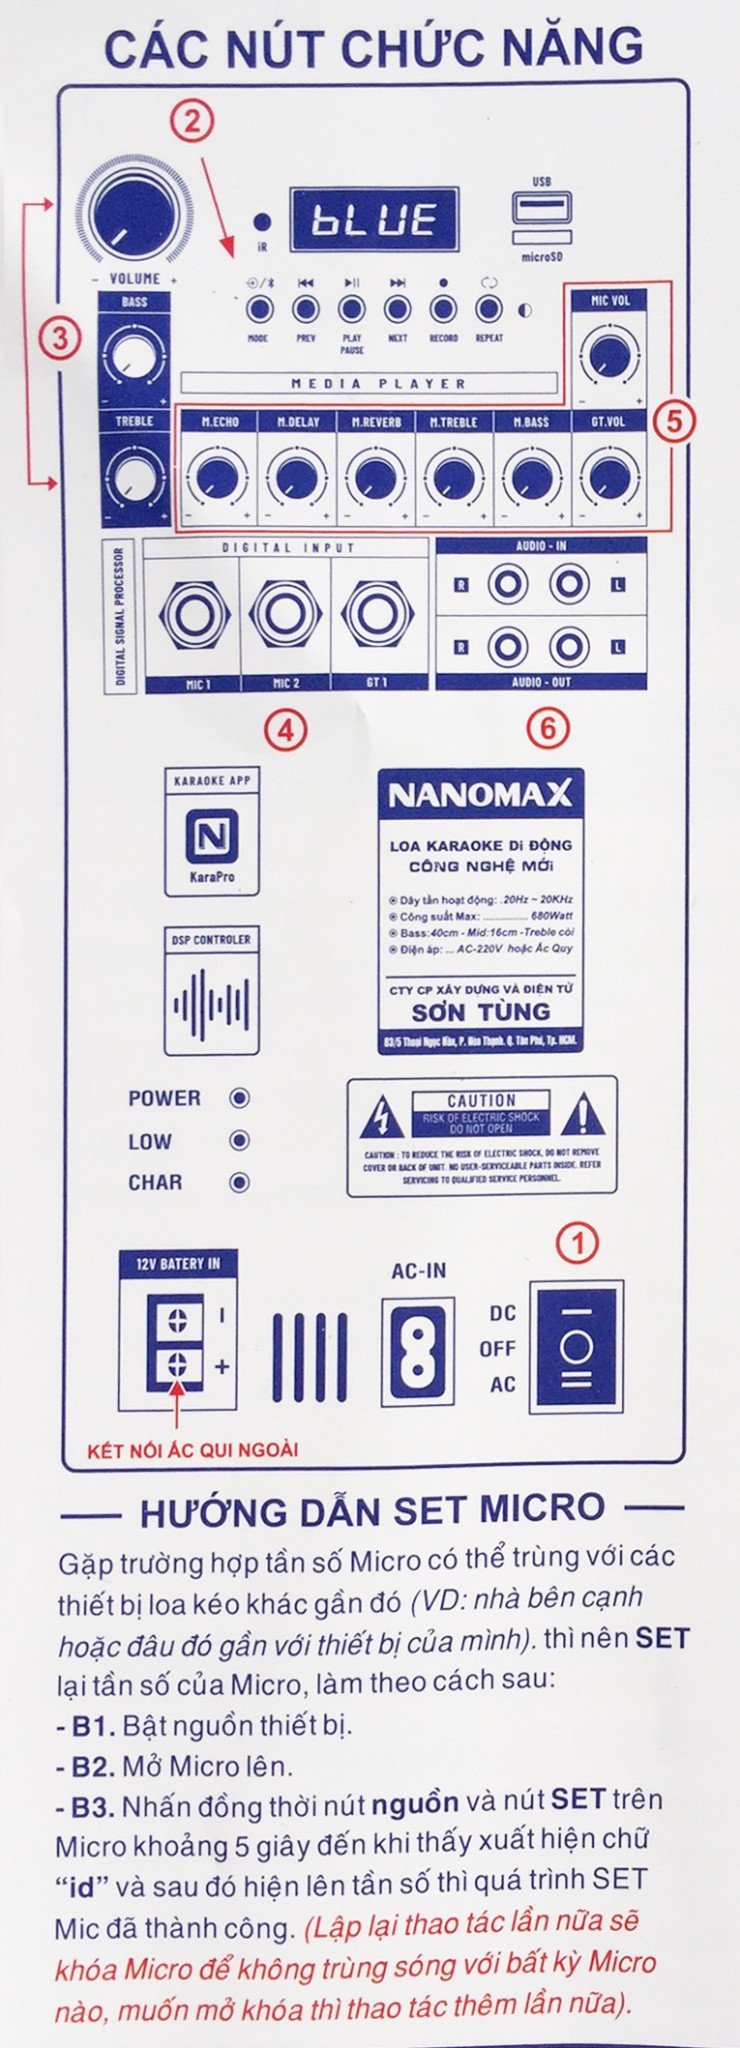 Hướng dẫn sử dụng loa kéo Nanomax